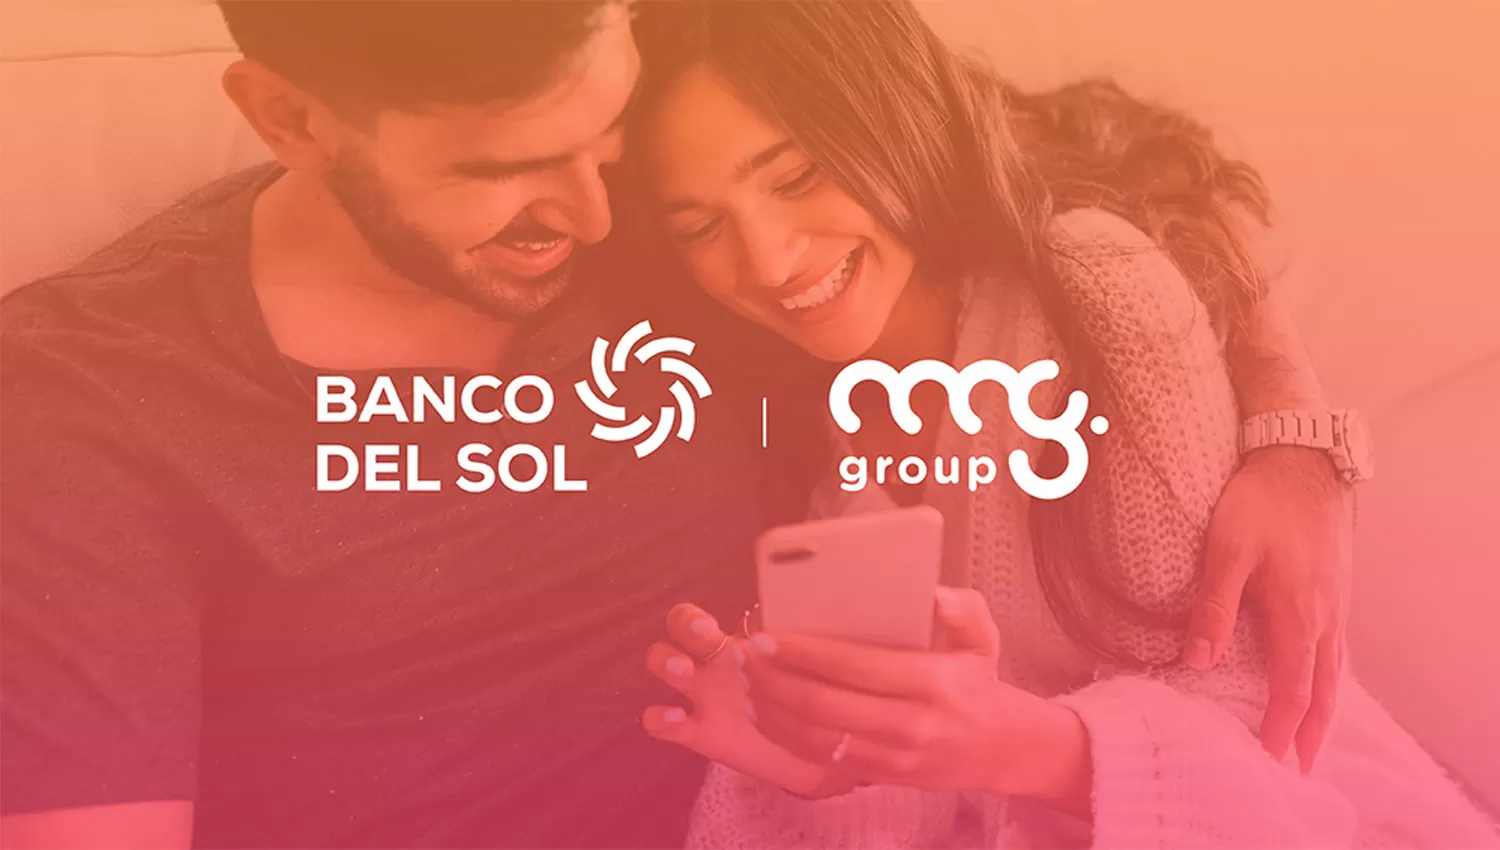 Banco del Sol firmó su primera alianza comercial con MG Group